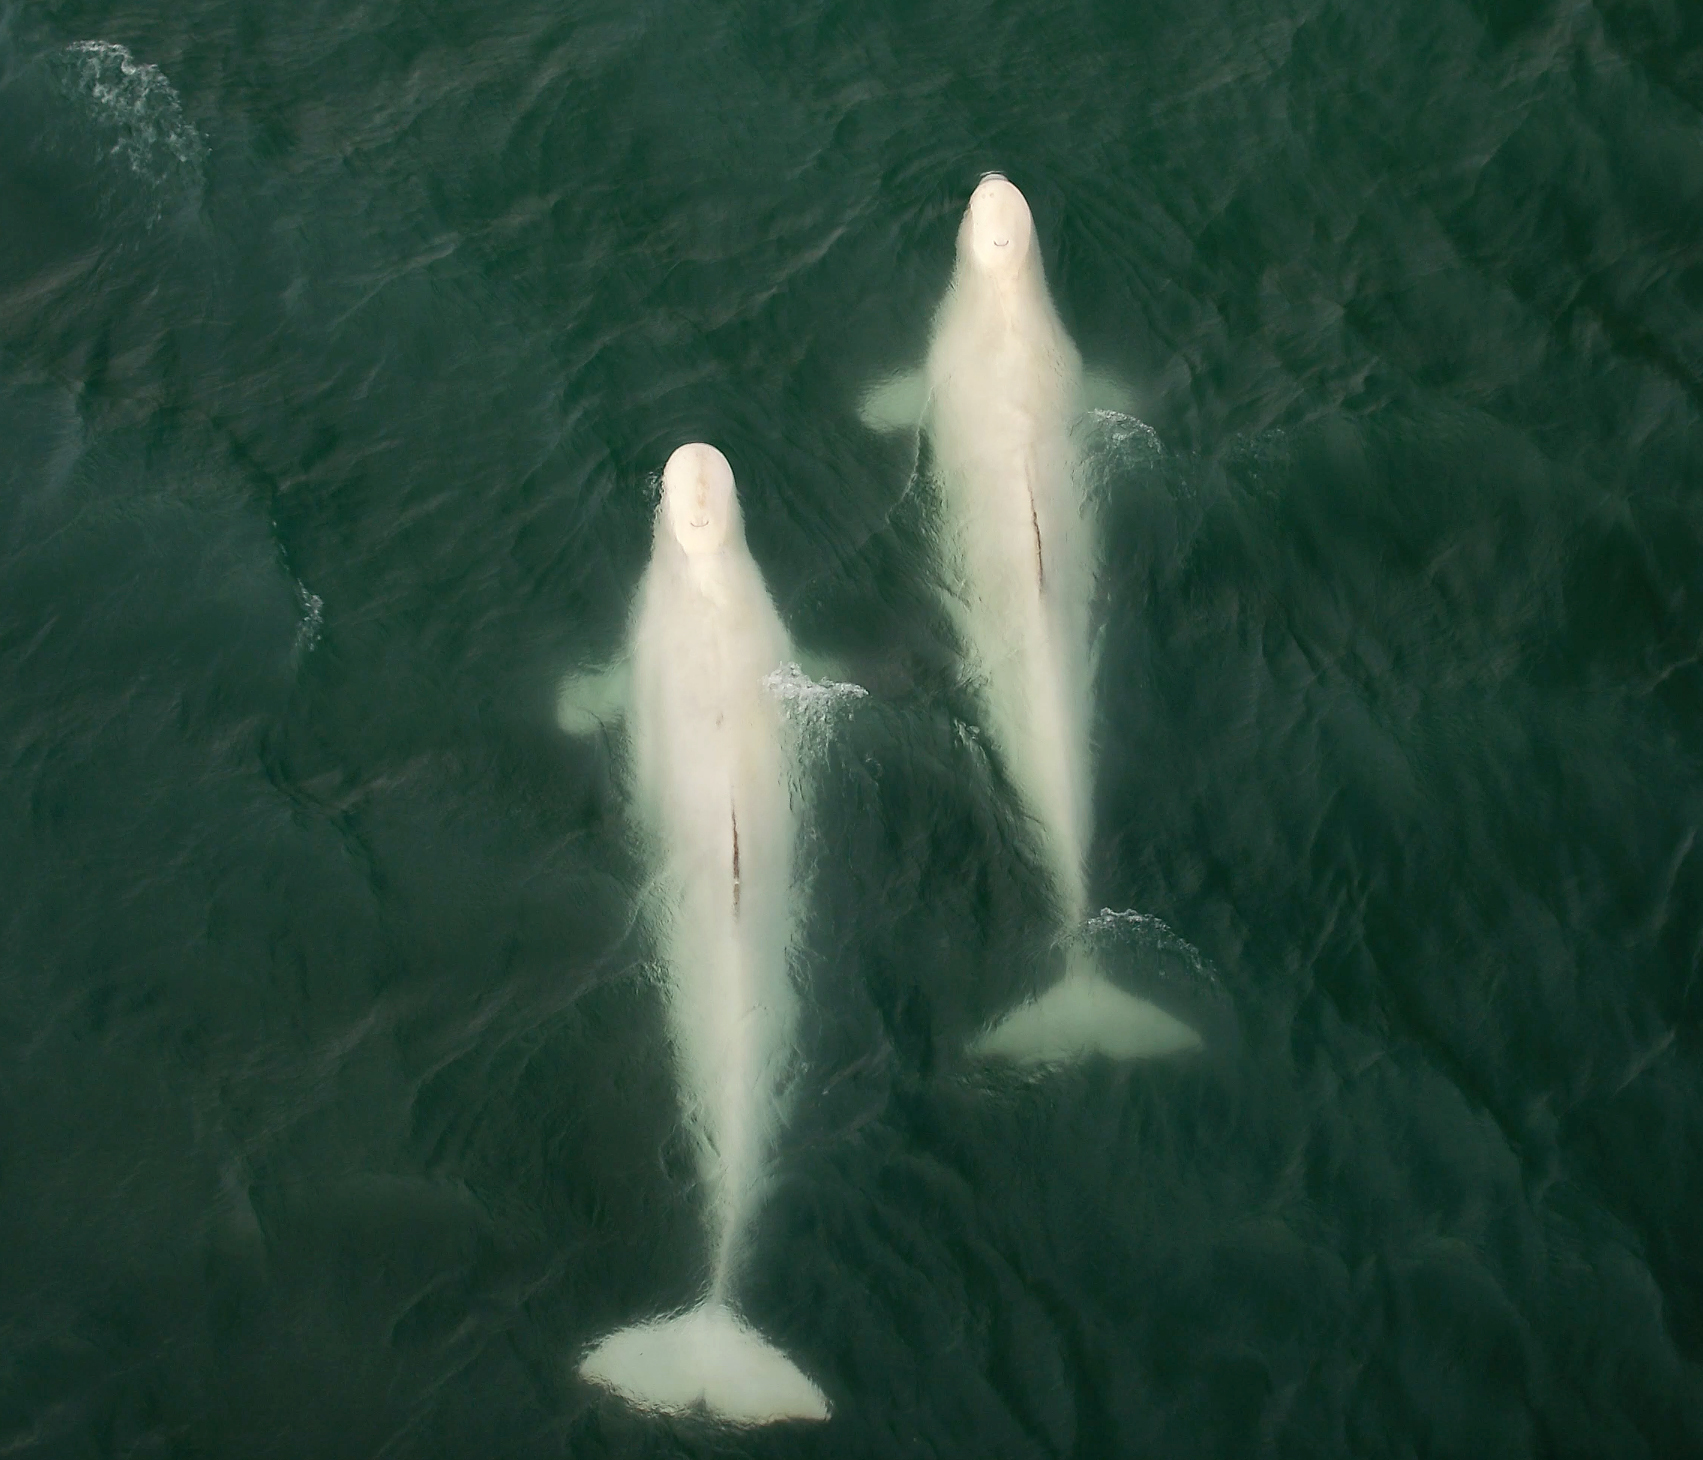 Two large beluga whales 